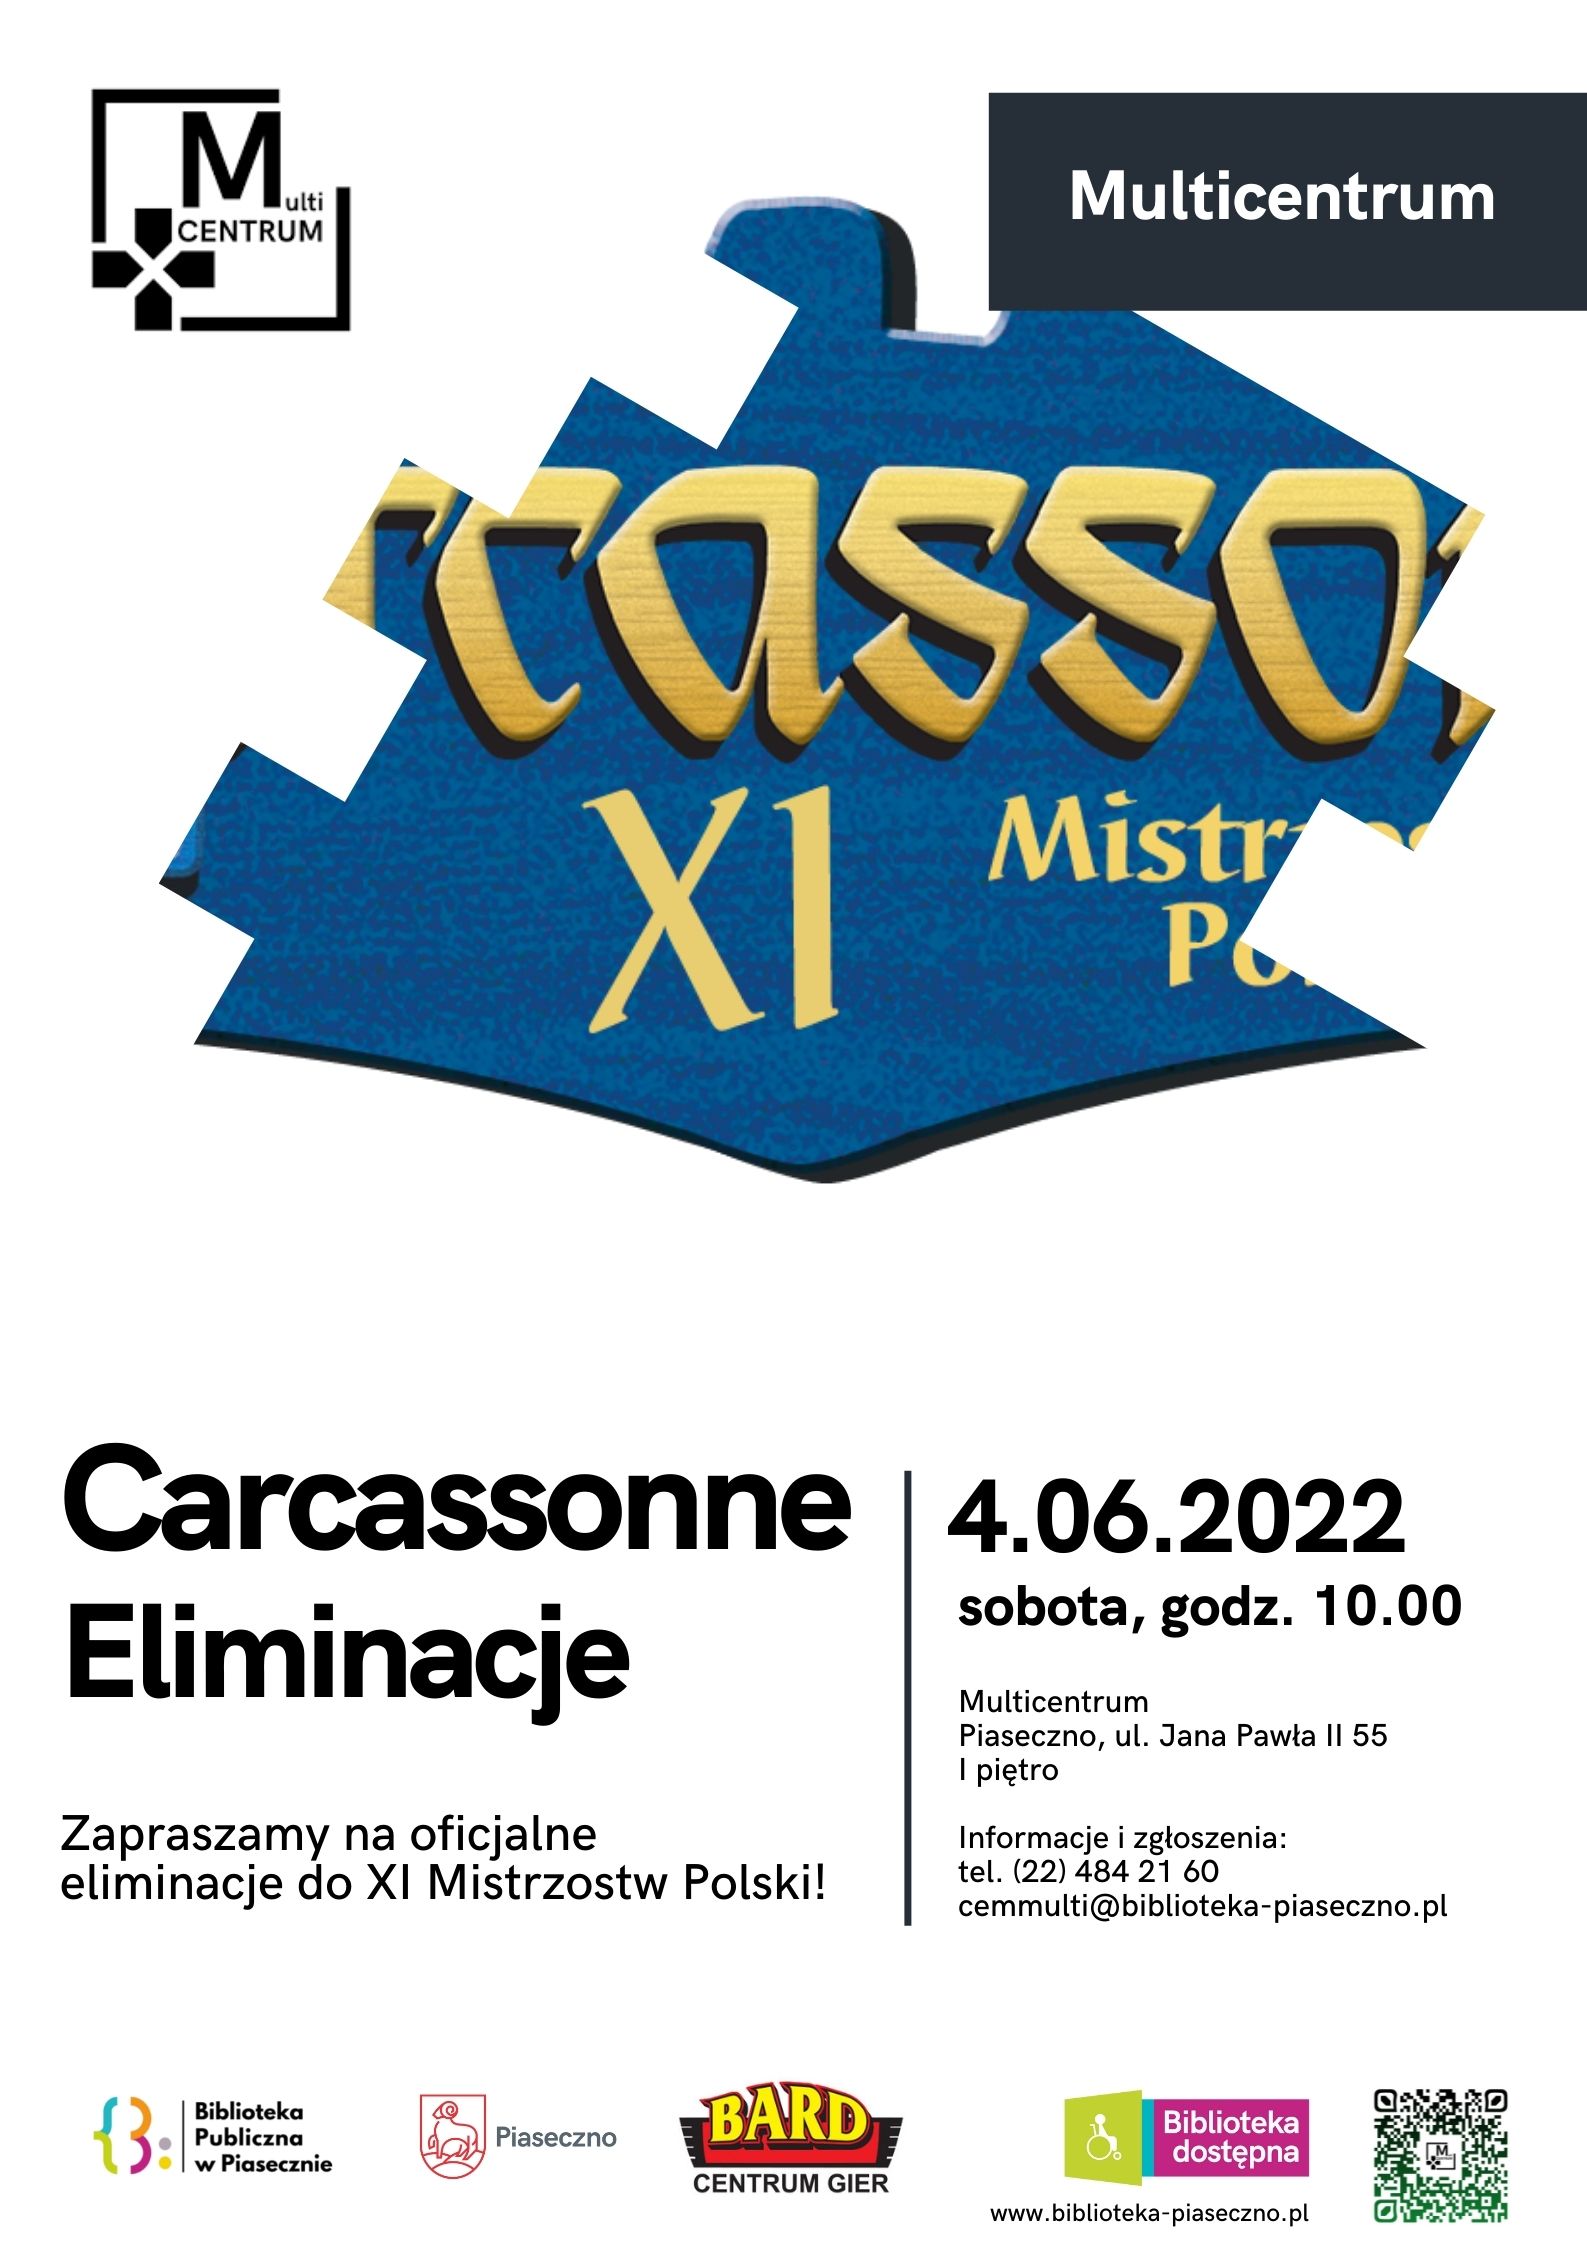 Eliminacje do Mistrzostw Polski 2022 w Carcassonne